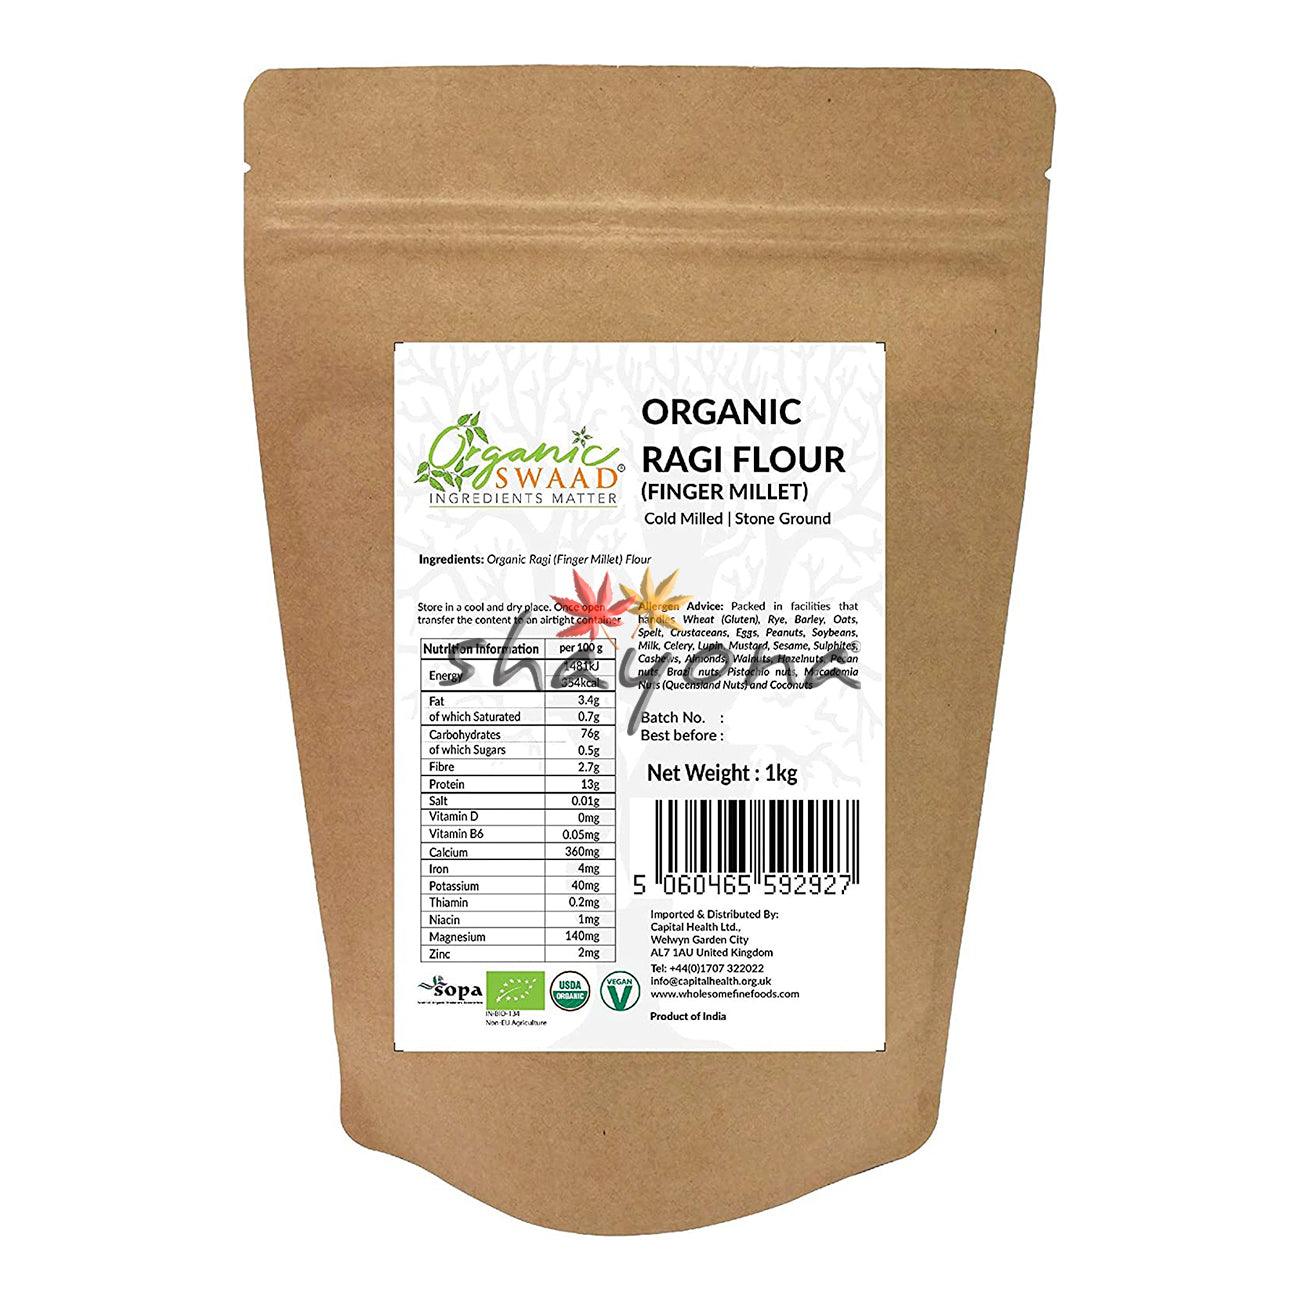 Organic Swaad Organic Ragi Flour - Shayona UK